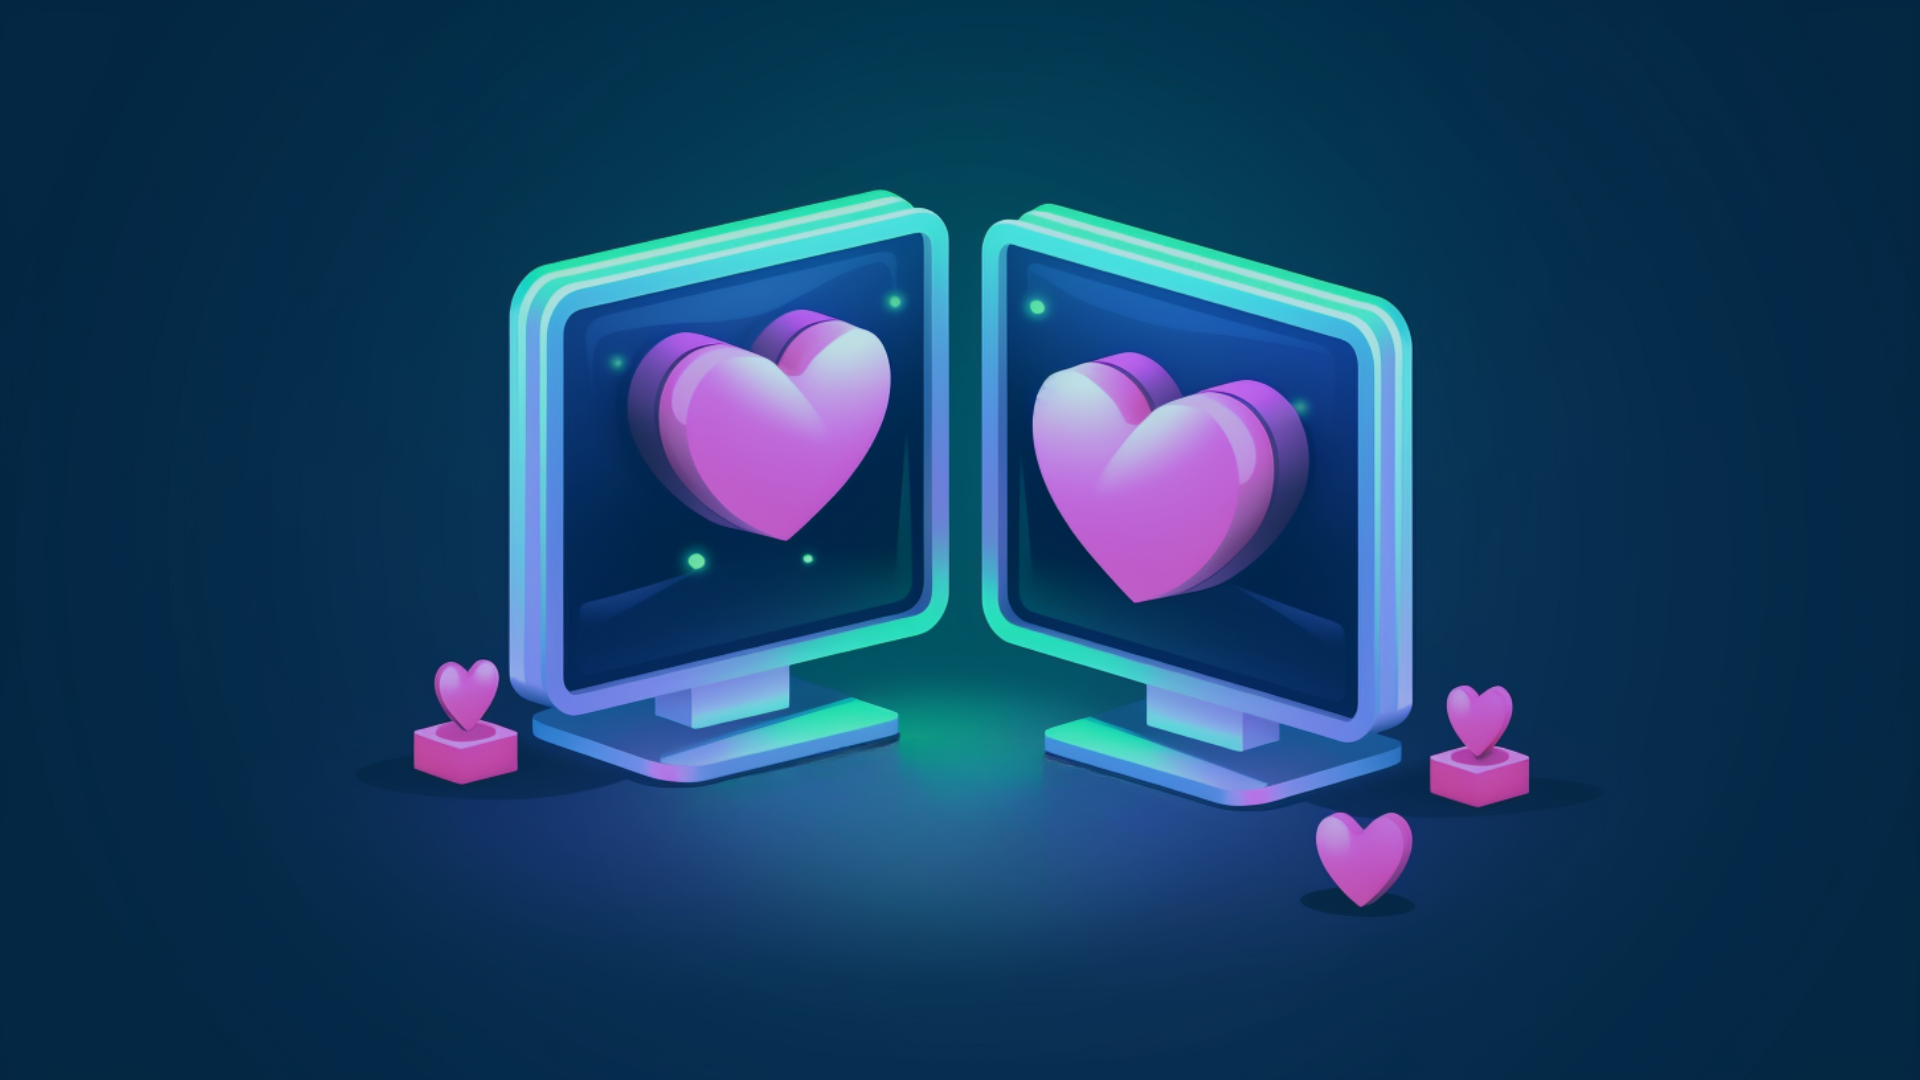 Illustrasjon i blått, grønt og rosa som viser to pc-skjermer med hjerter på skjermene. IT-partner.